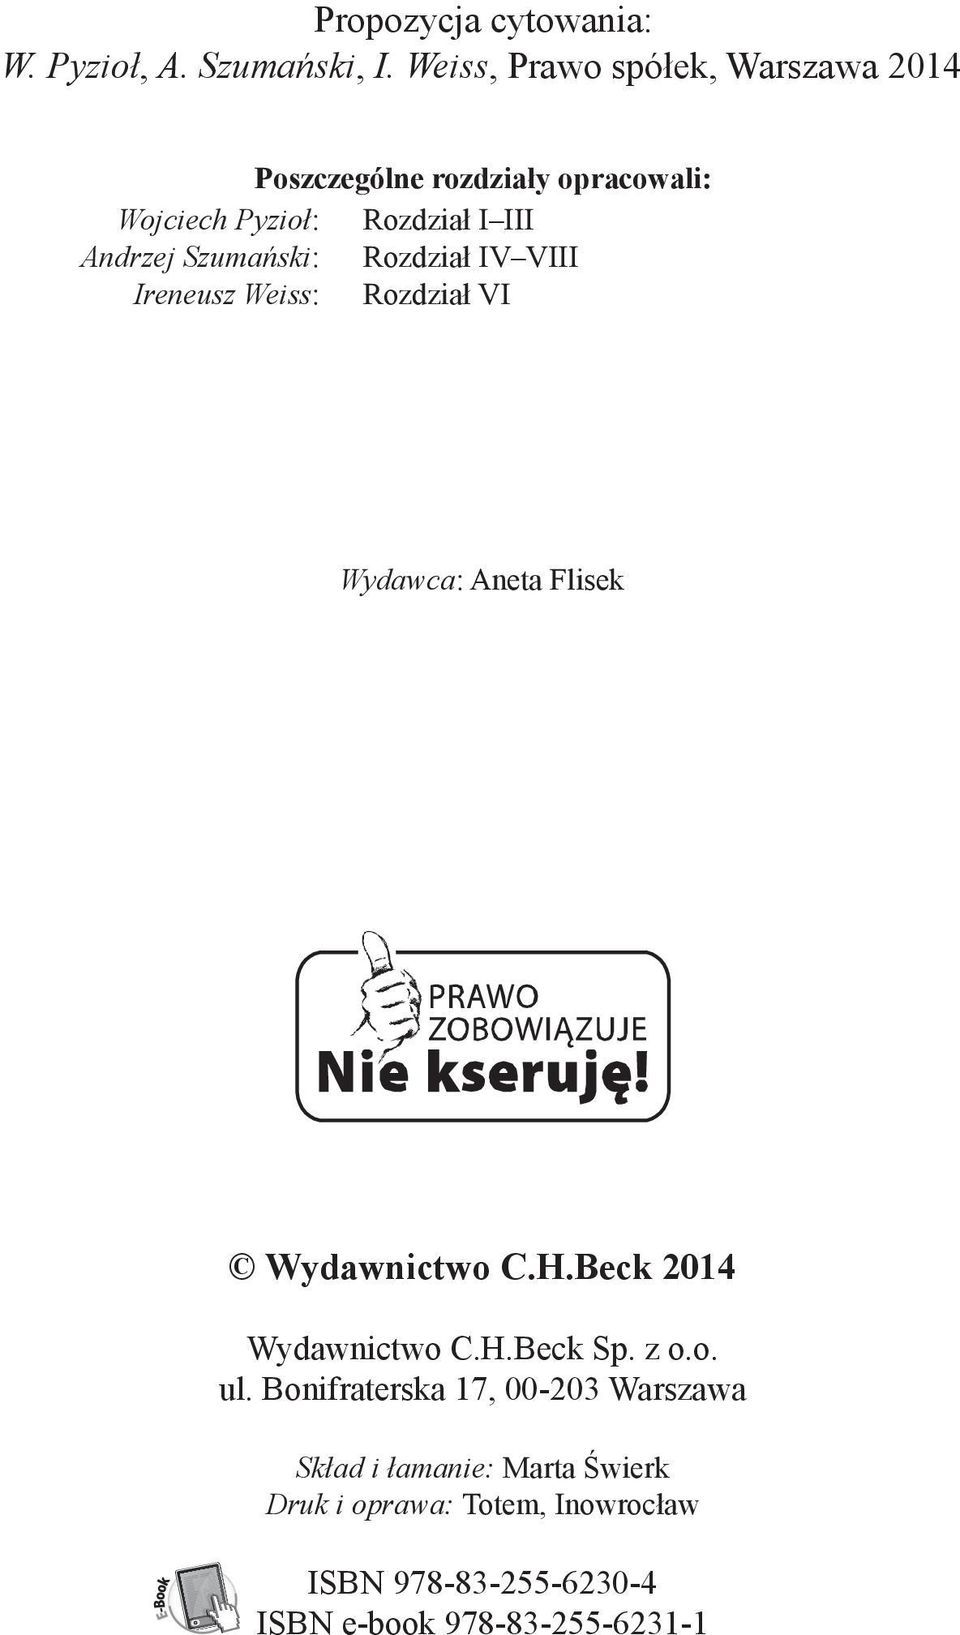 Szumański: Rozdział IV VIII Ireneusz Weiss: Rozdział VI Wydawca: Aneta Flisek Wydawnictwo C.H.